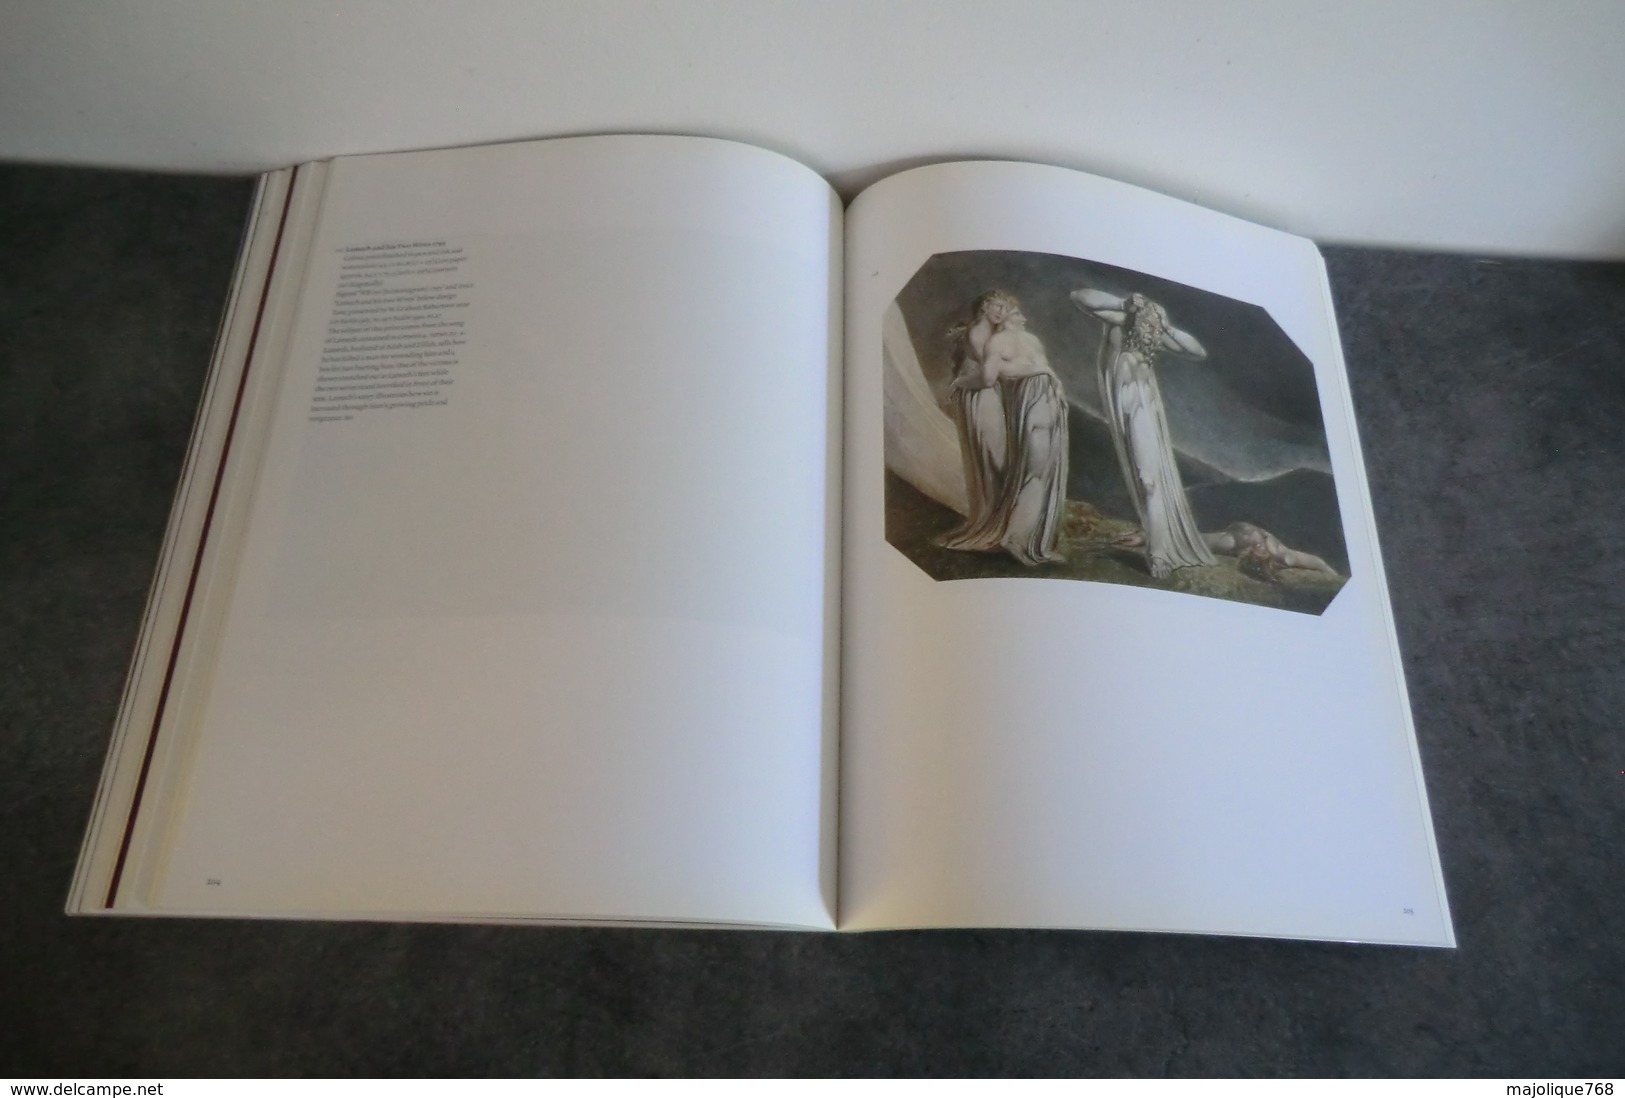 William Blake - par robin hamlyn et Michael Phillips - -Peter ackroyd et Marilyn butler - 2000 -